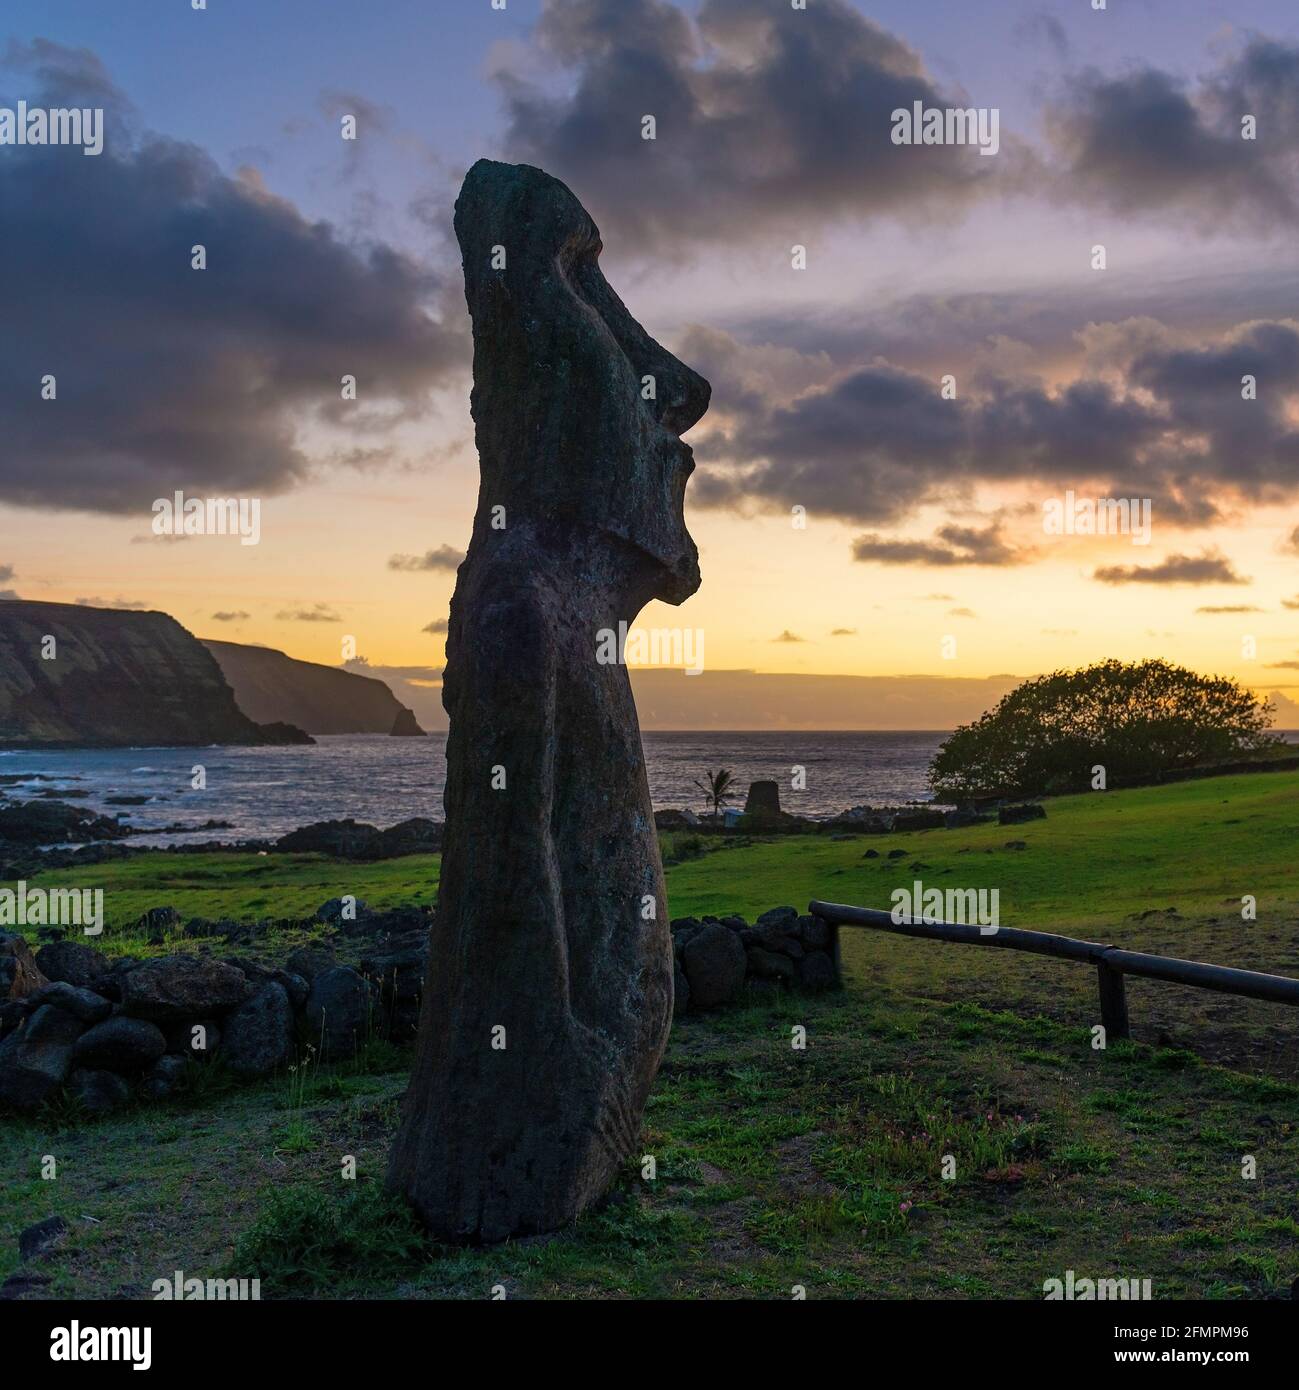 Moai at sunrise, Ahu Tongariki, Rapa Nui (Easter Island), Chile. Stock Photo